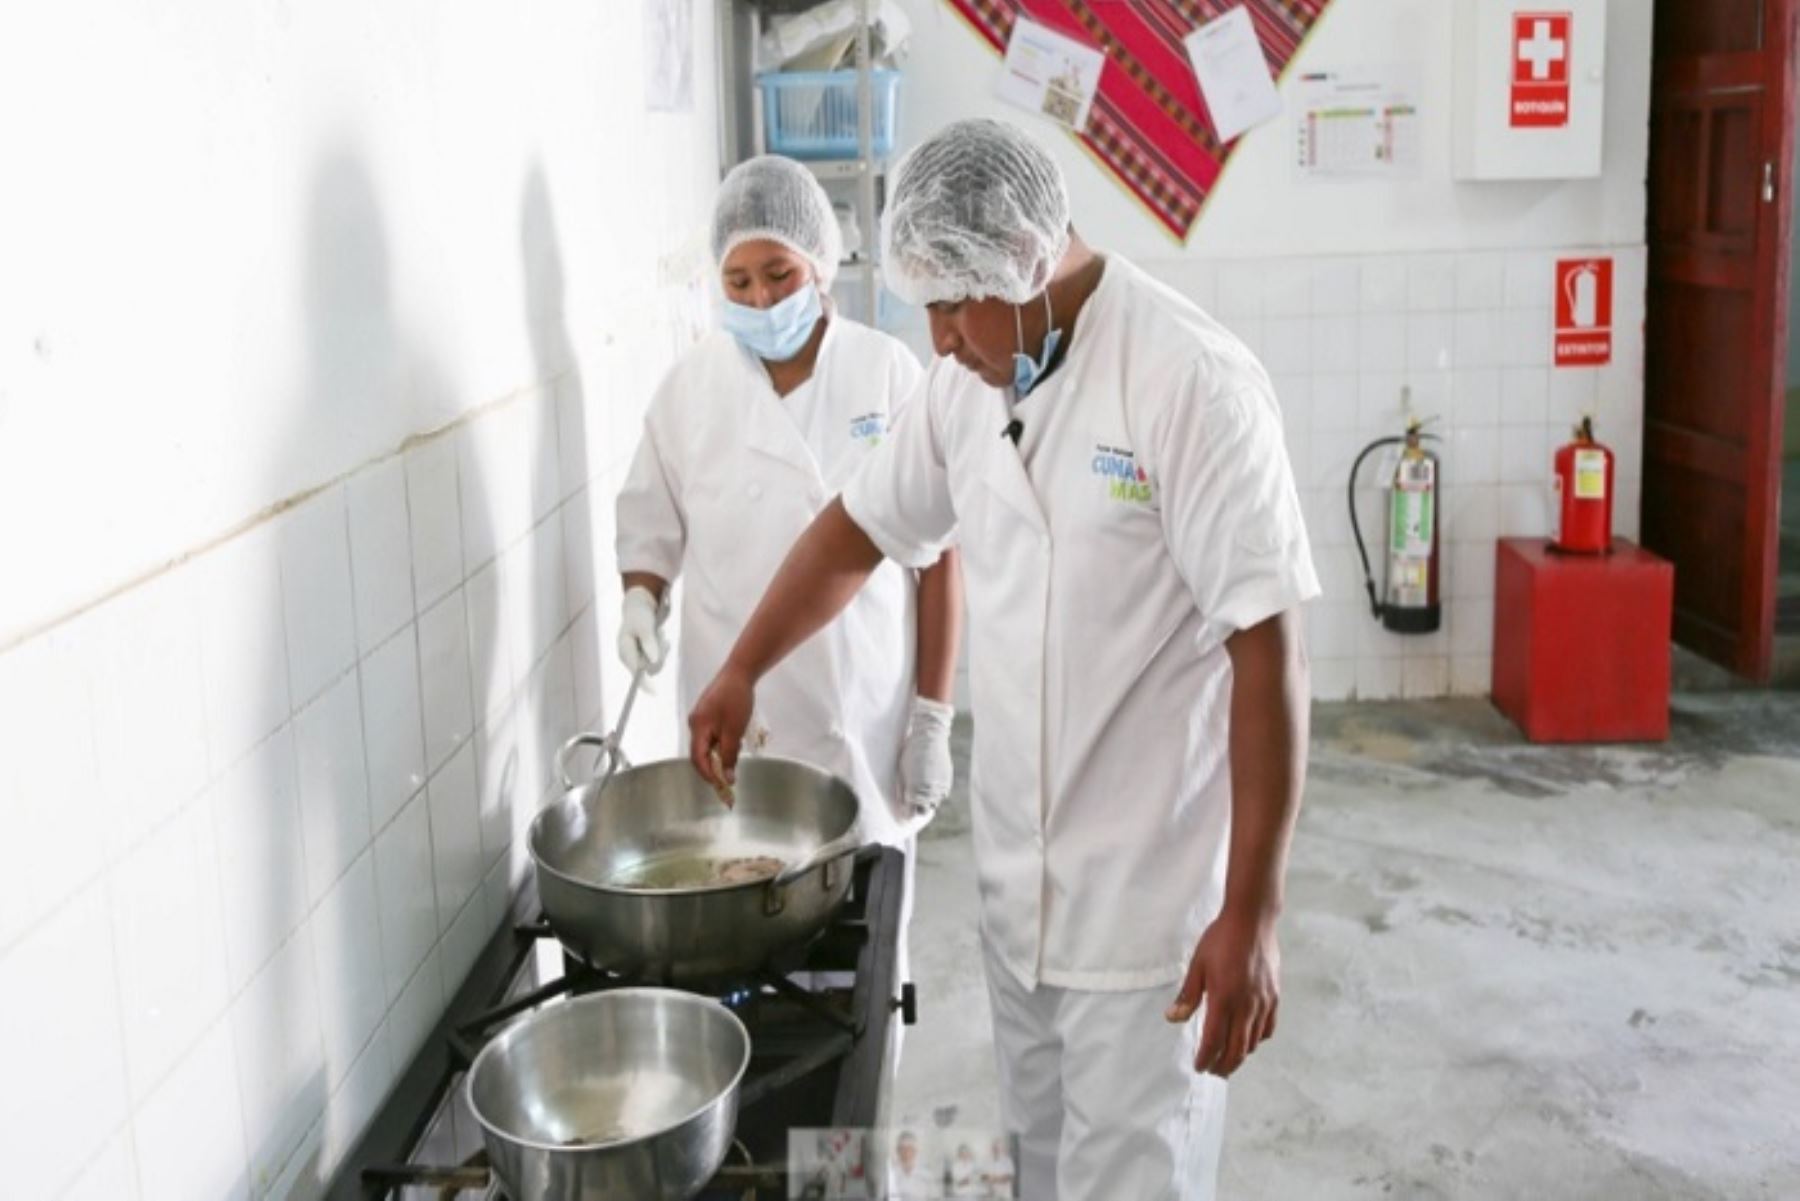 Belmo Ventura Quispe, de 26 años de edad, es uno de los 60 socios de cocina voluntarios varones que tiene el Programa Nacional Cuna Más del Ministerio de Desarrollo e Inclusión Social (Midis) en todo el país y la gastronomía es su pasión, tal como lo demuestra de lunes a viernes, en el servicio alimentario del centro poblado de Putacca, en la región Ayacucho.